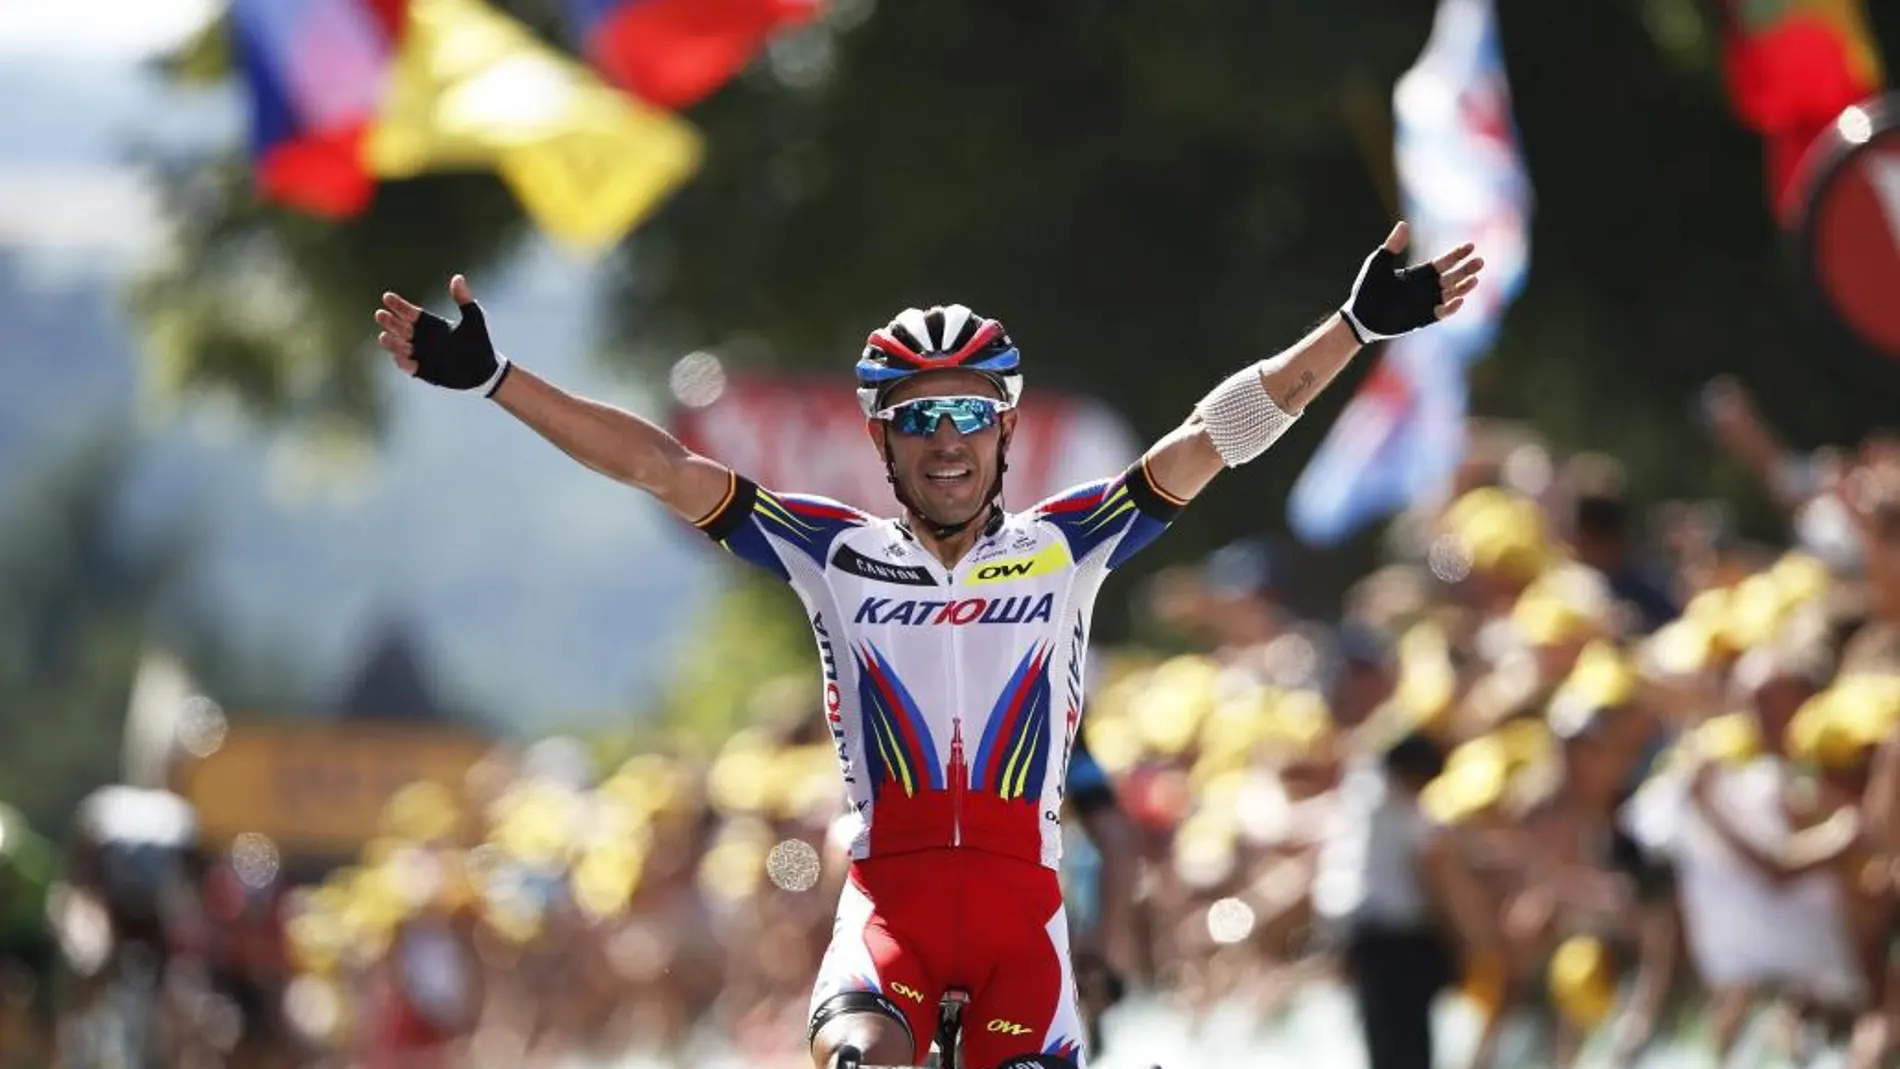 El ciclista español Joaquín "Purito"Rodríguez, del Katusha, celebra su victoria en la tercera etapa de la 102ª edición del Tour de Francia